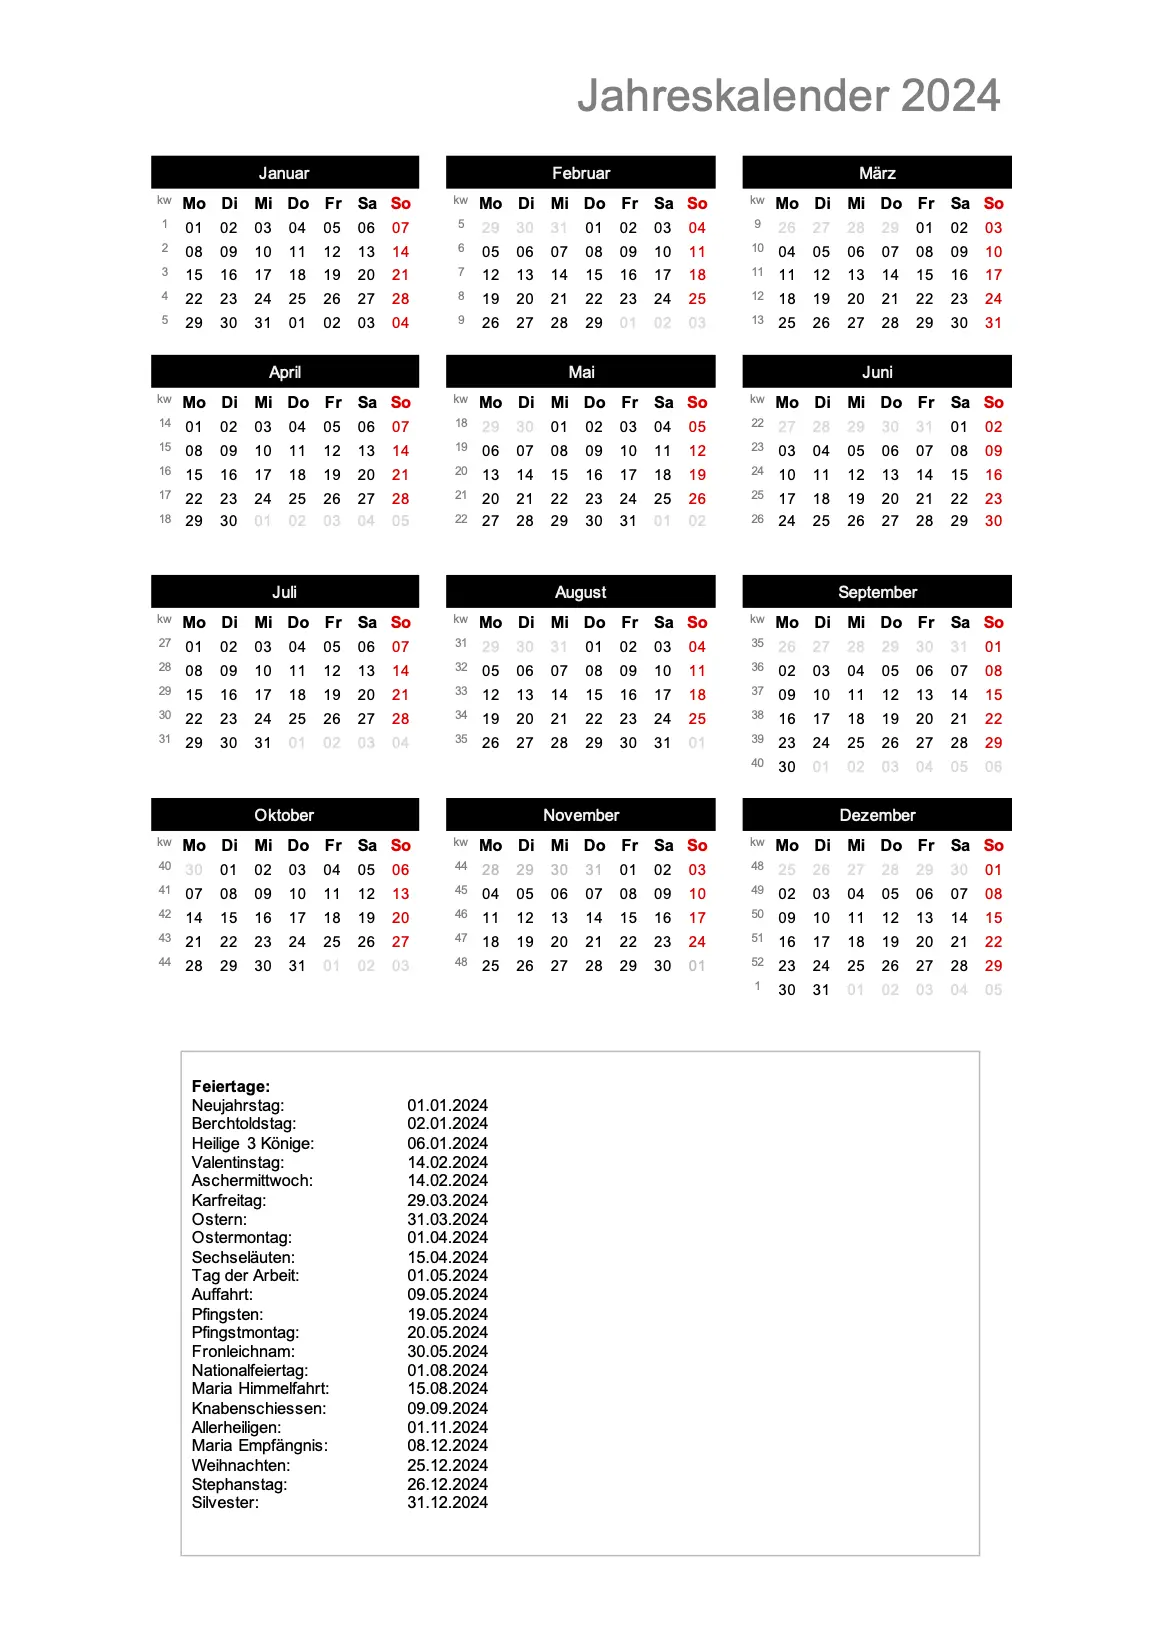 Jahreskalender 2024 im Hochformat
Download